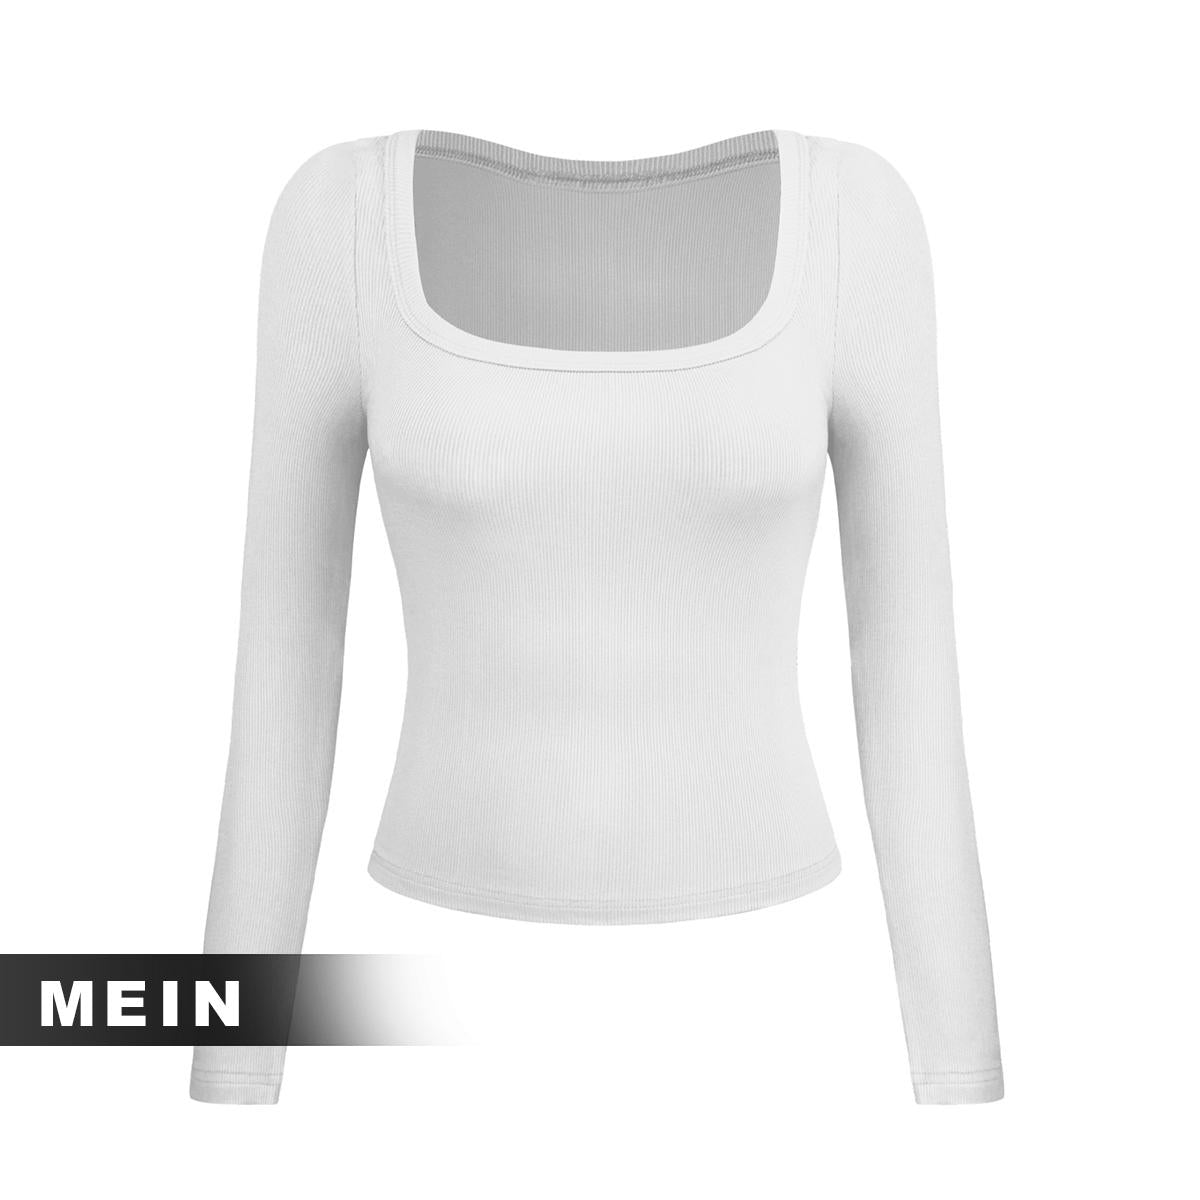 [MEIN] 002 Kaos Polos Long Sleeve Shirt Wanita Top Pendek Baju Crop Oblong Atasan Katun Panjang Dewasa